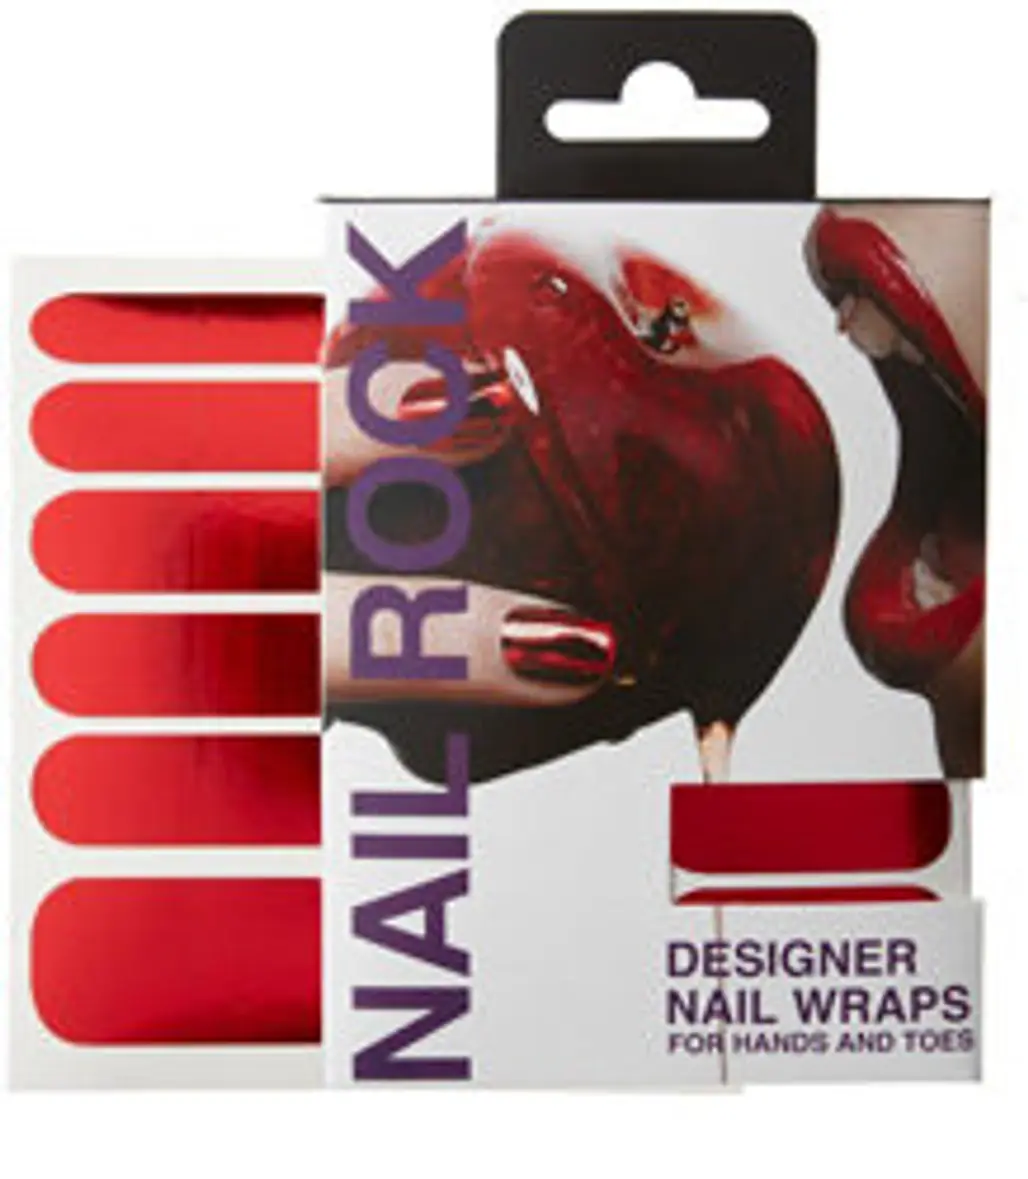 Nail Rock Designer Nail Wraps in Metallic Red